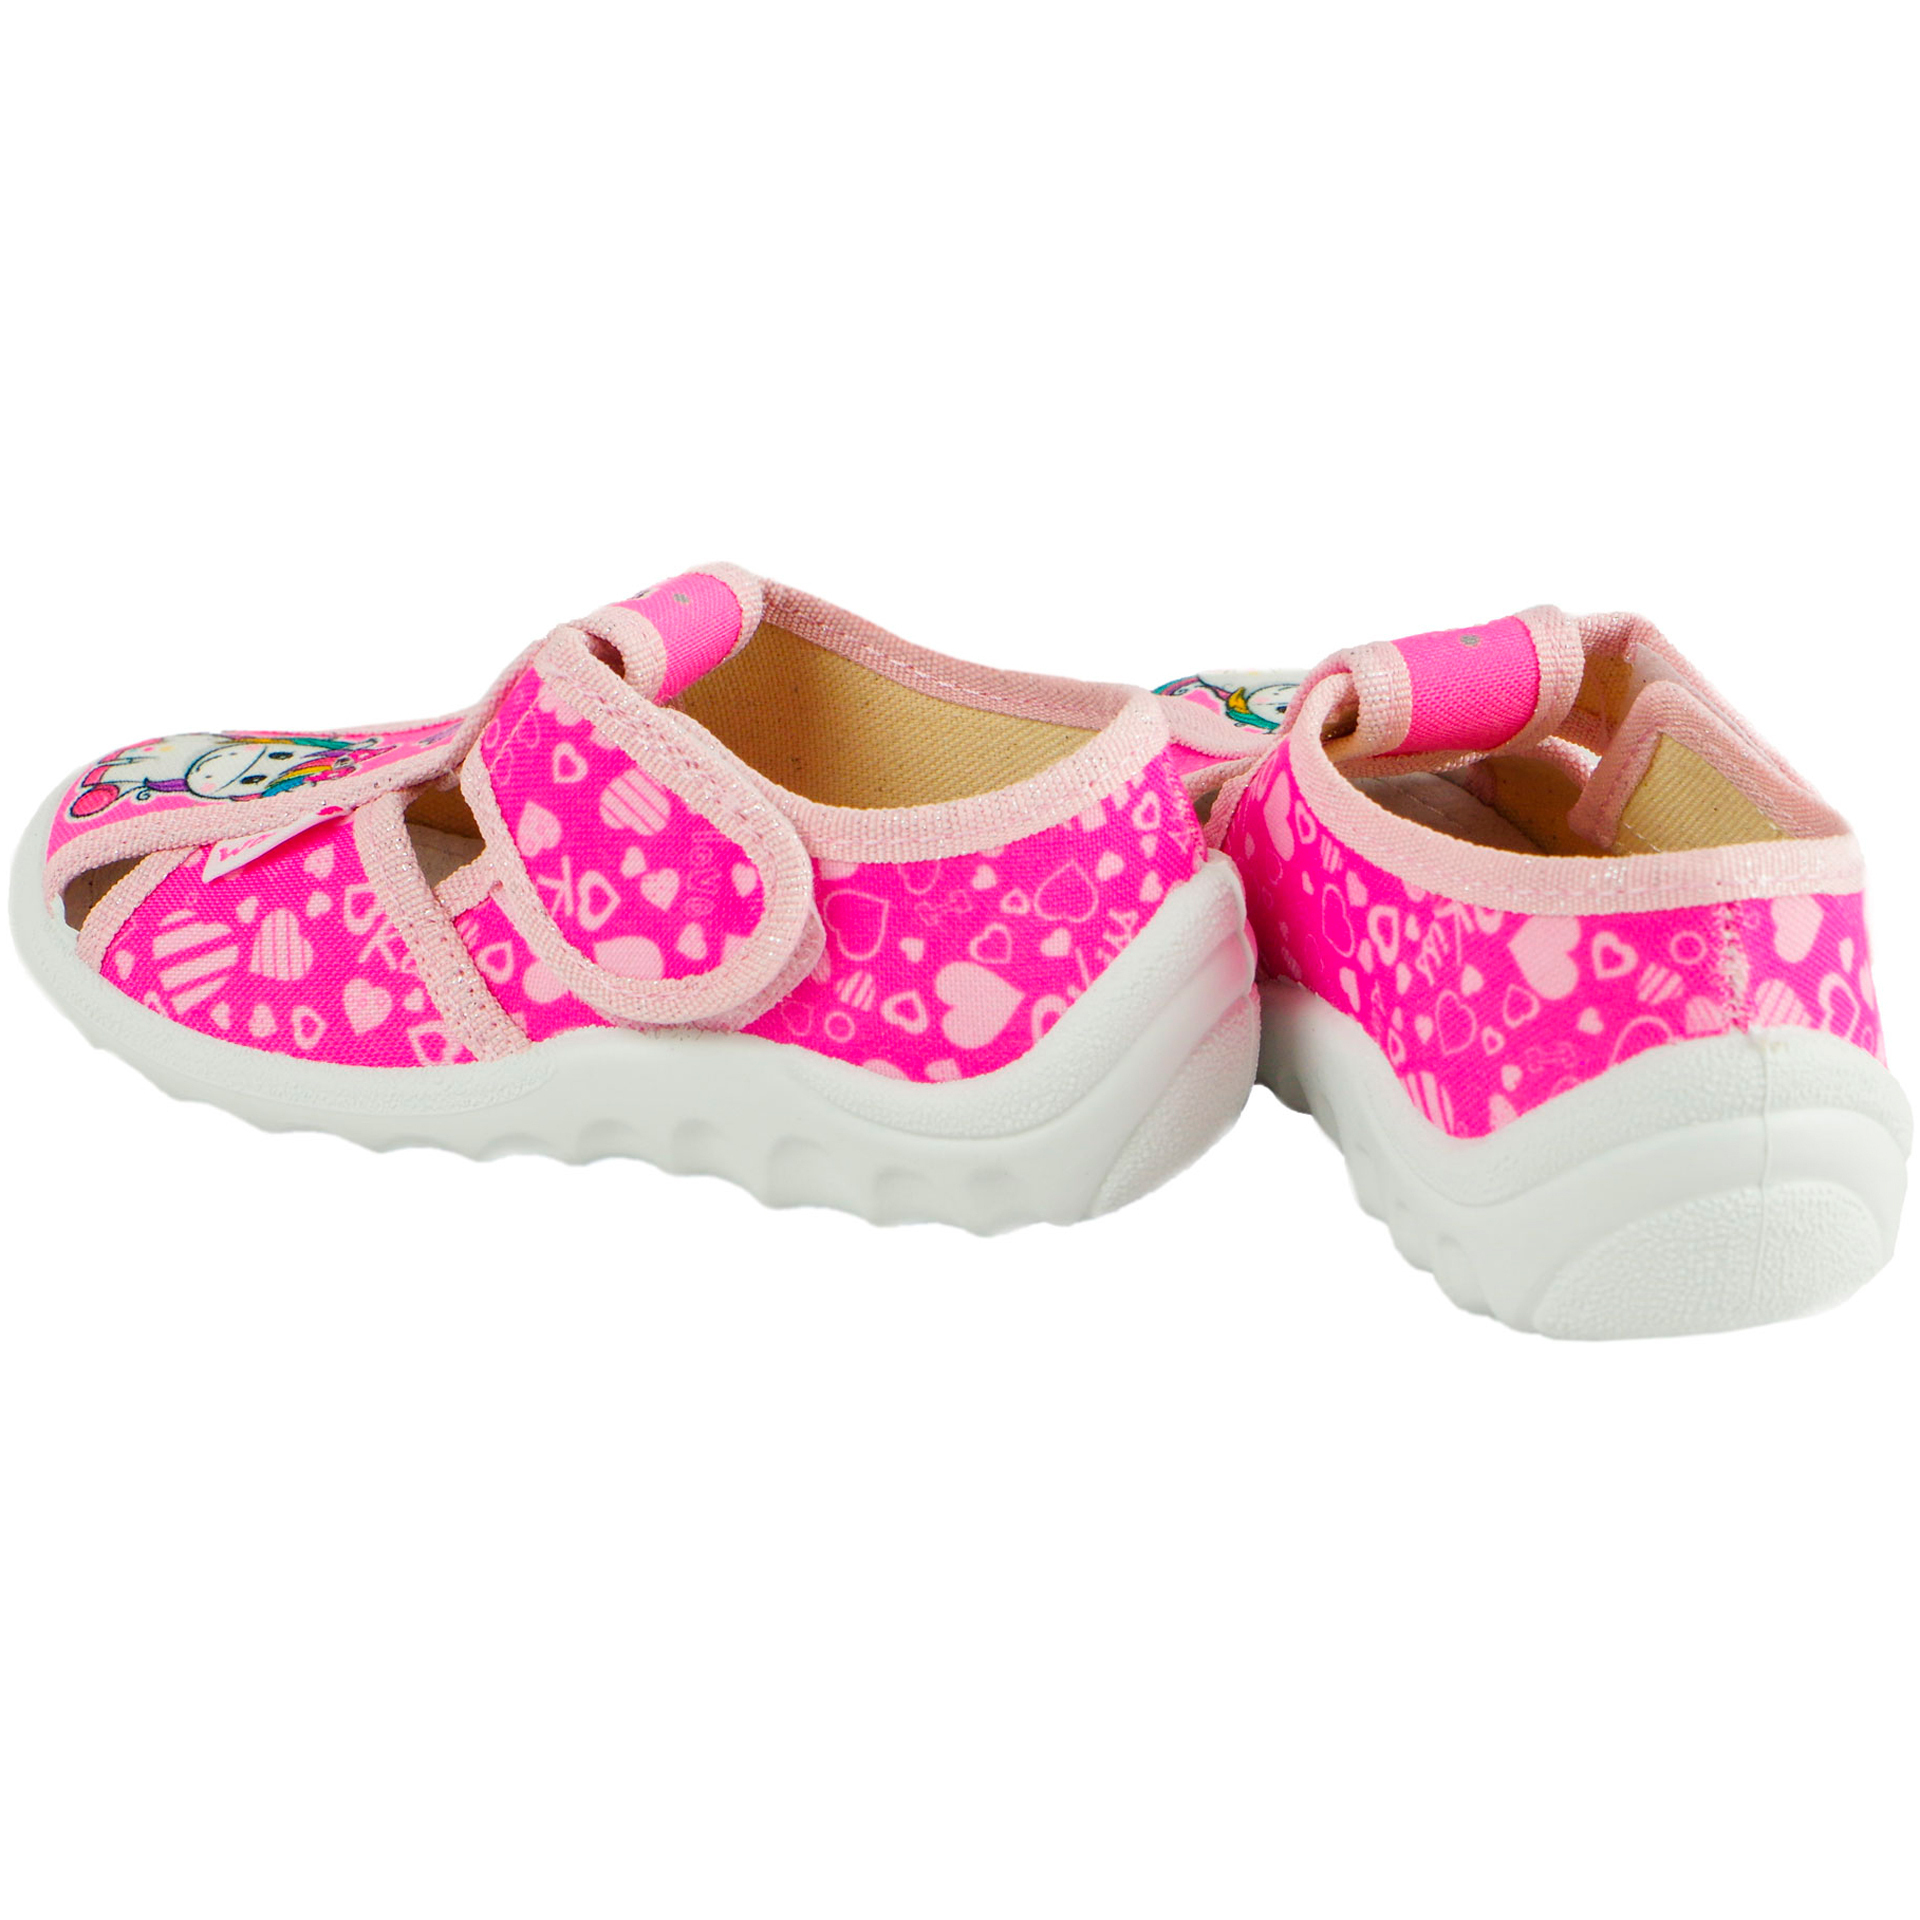 Текстильная обувь для девочек Тапочки Маша (2019) цвет Розовый 21-27 размеры – Sole Kids. Фото 2